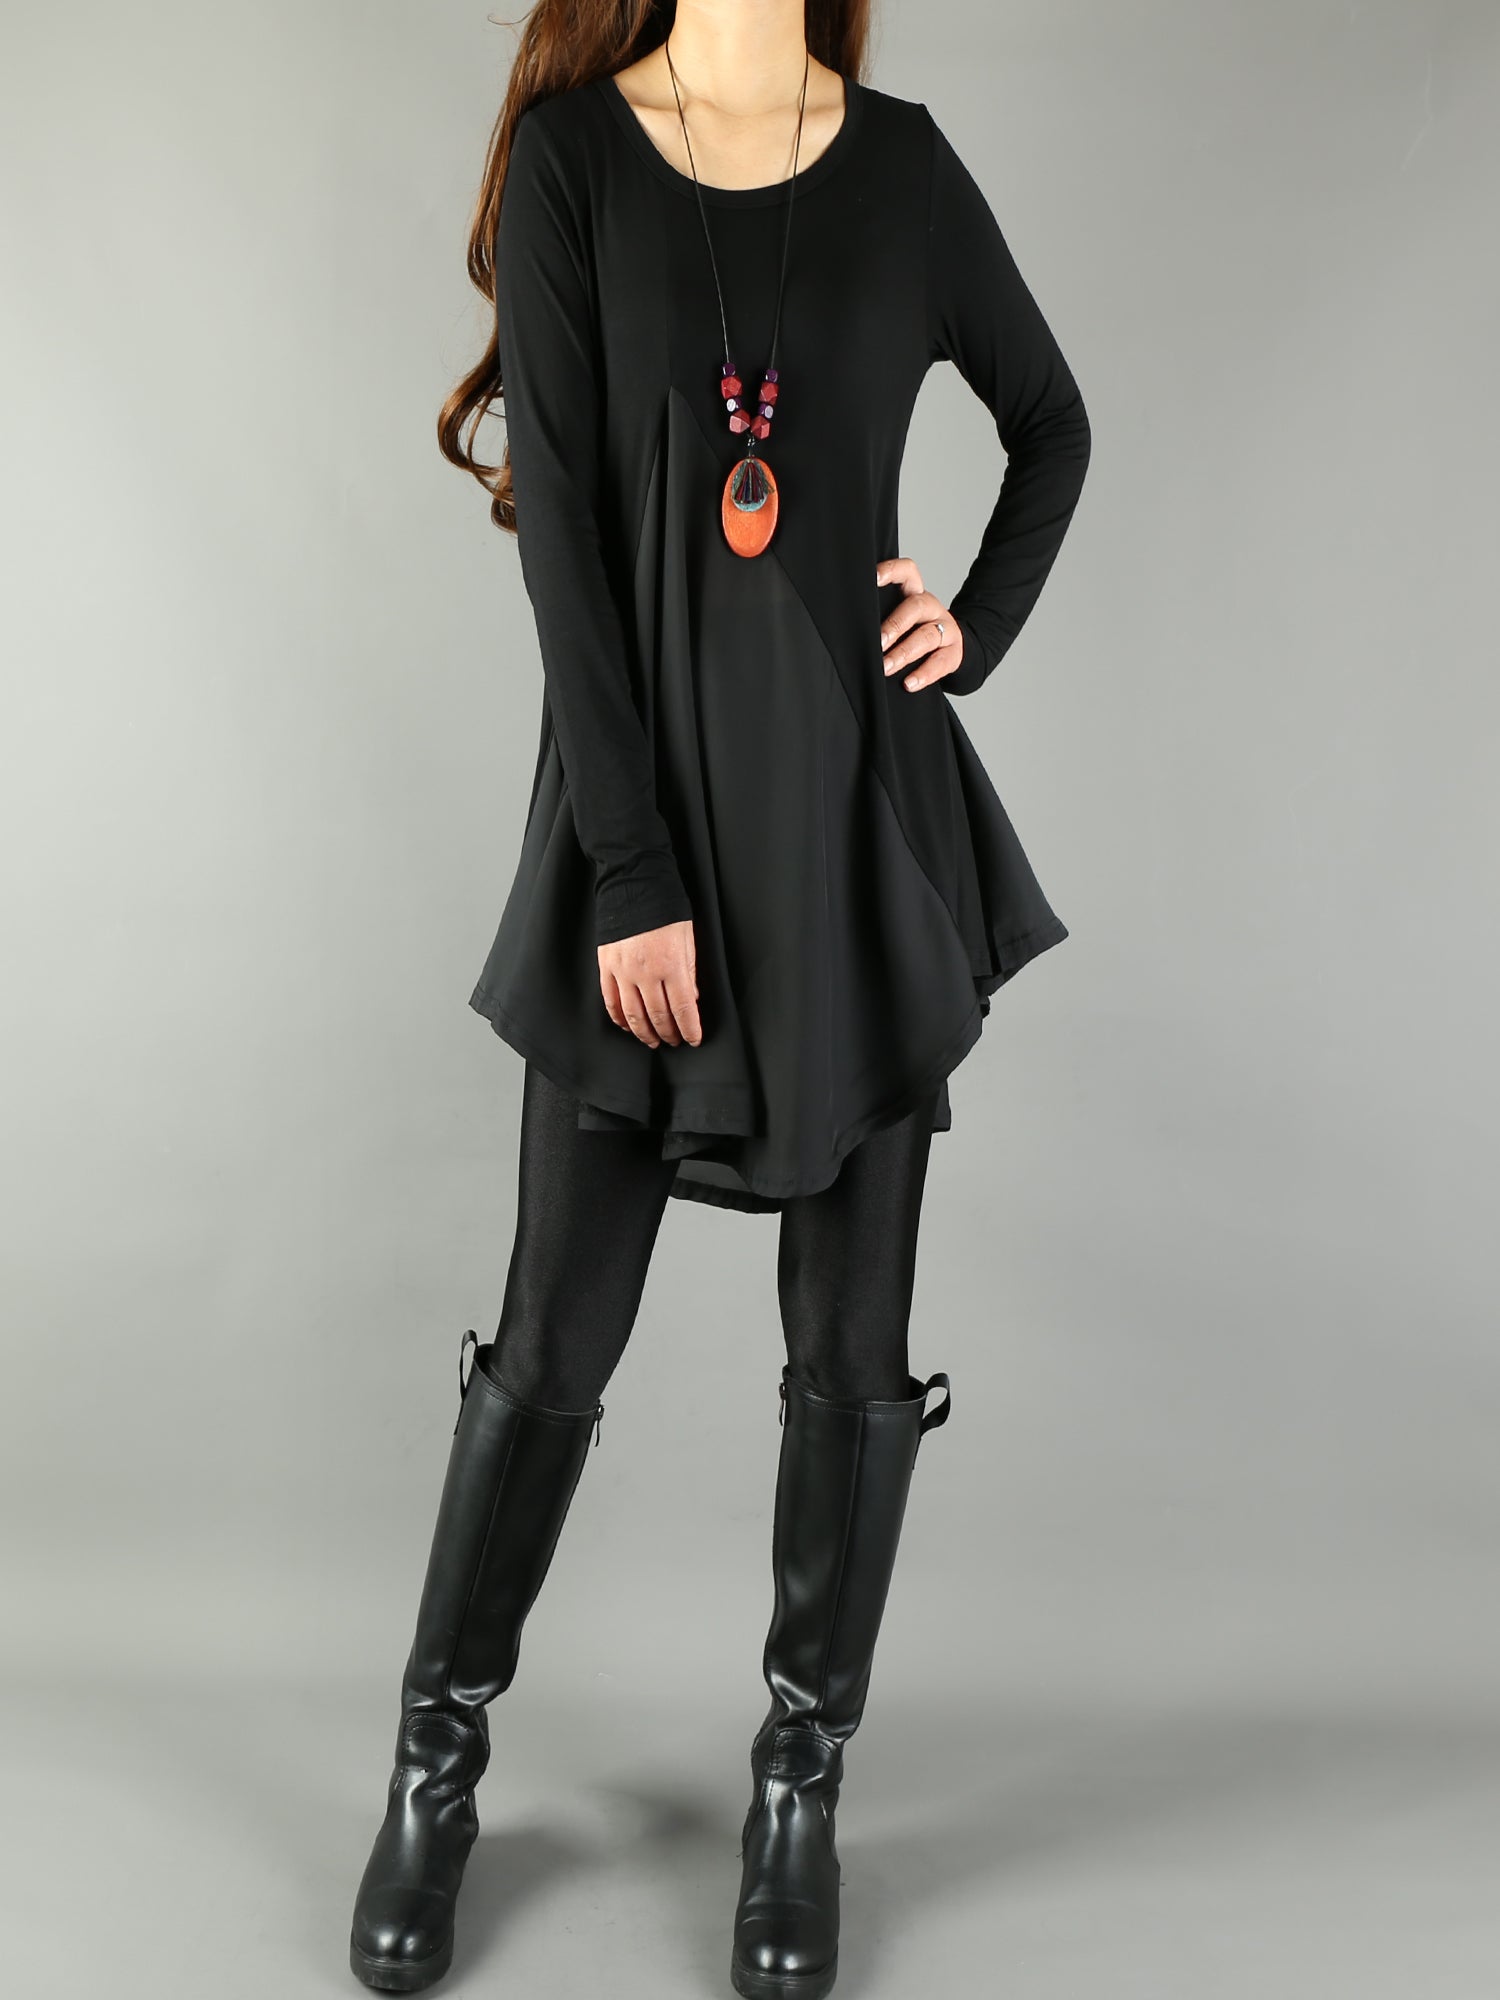 Women's Modal and Chiffon Tunic Dress/Modal Top/Chiffon Tunic for Wome –  lijingshop